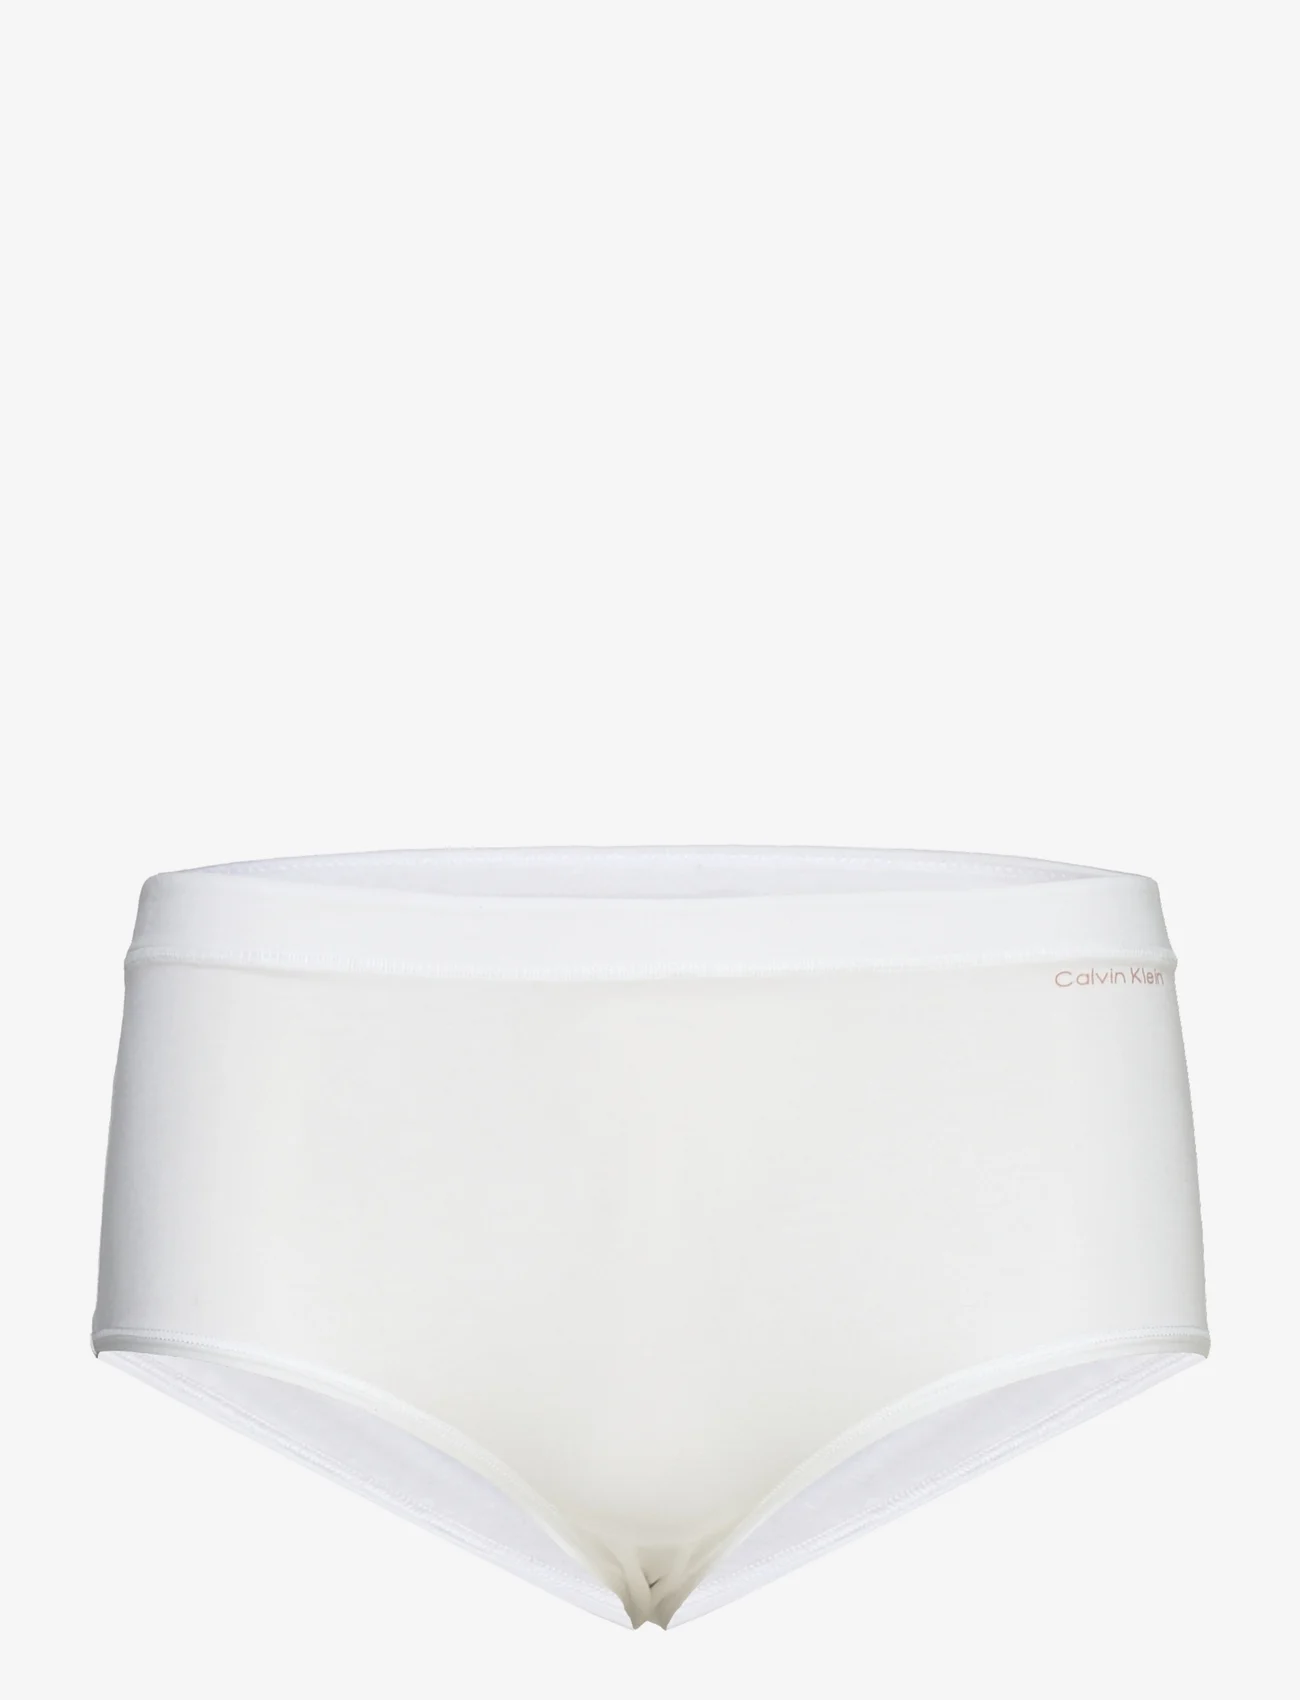 Calvin Klein - BRIEF (MID-RISE) - zemākās cenas - white - 0